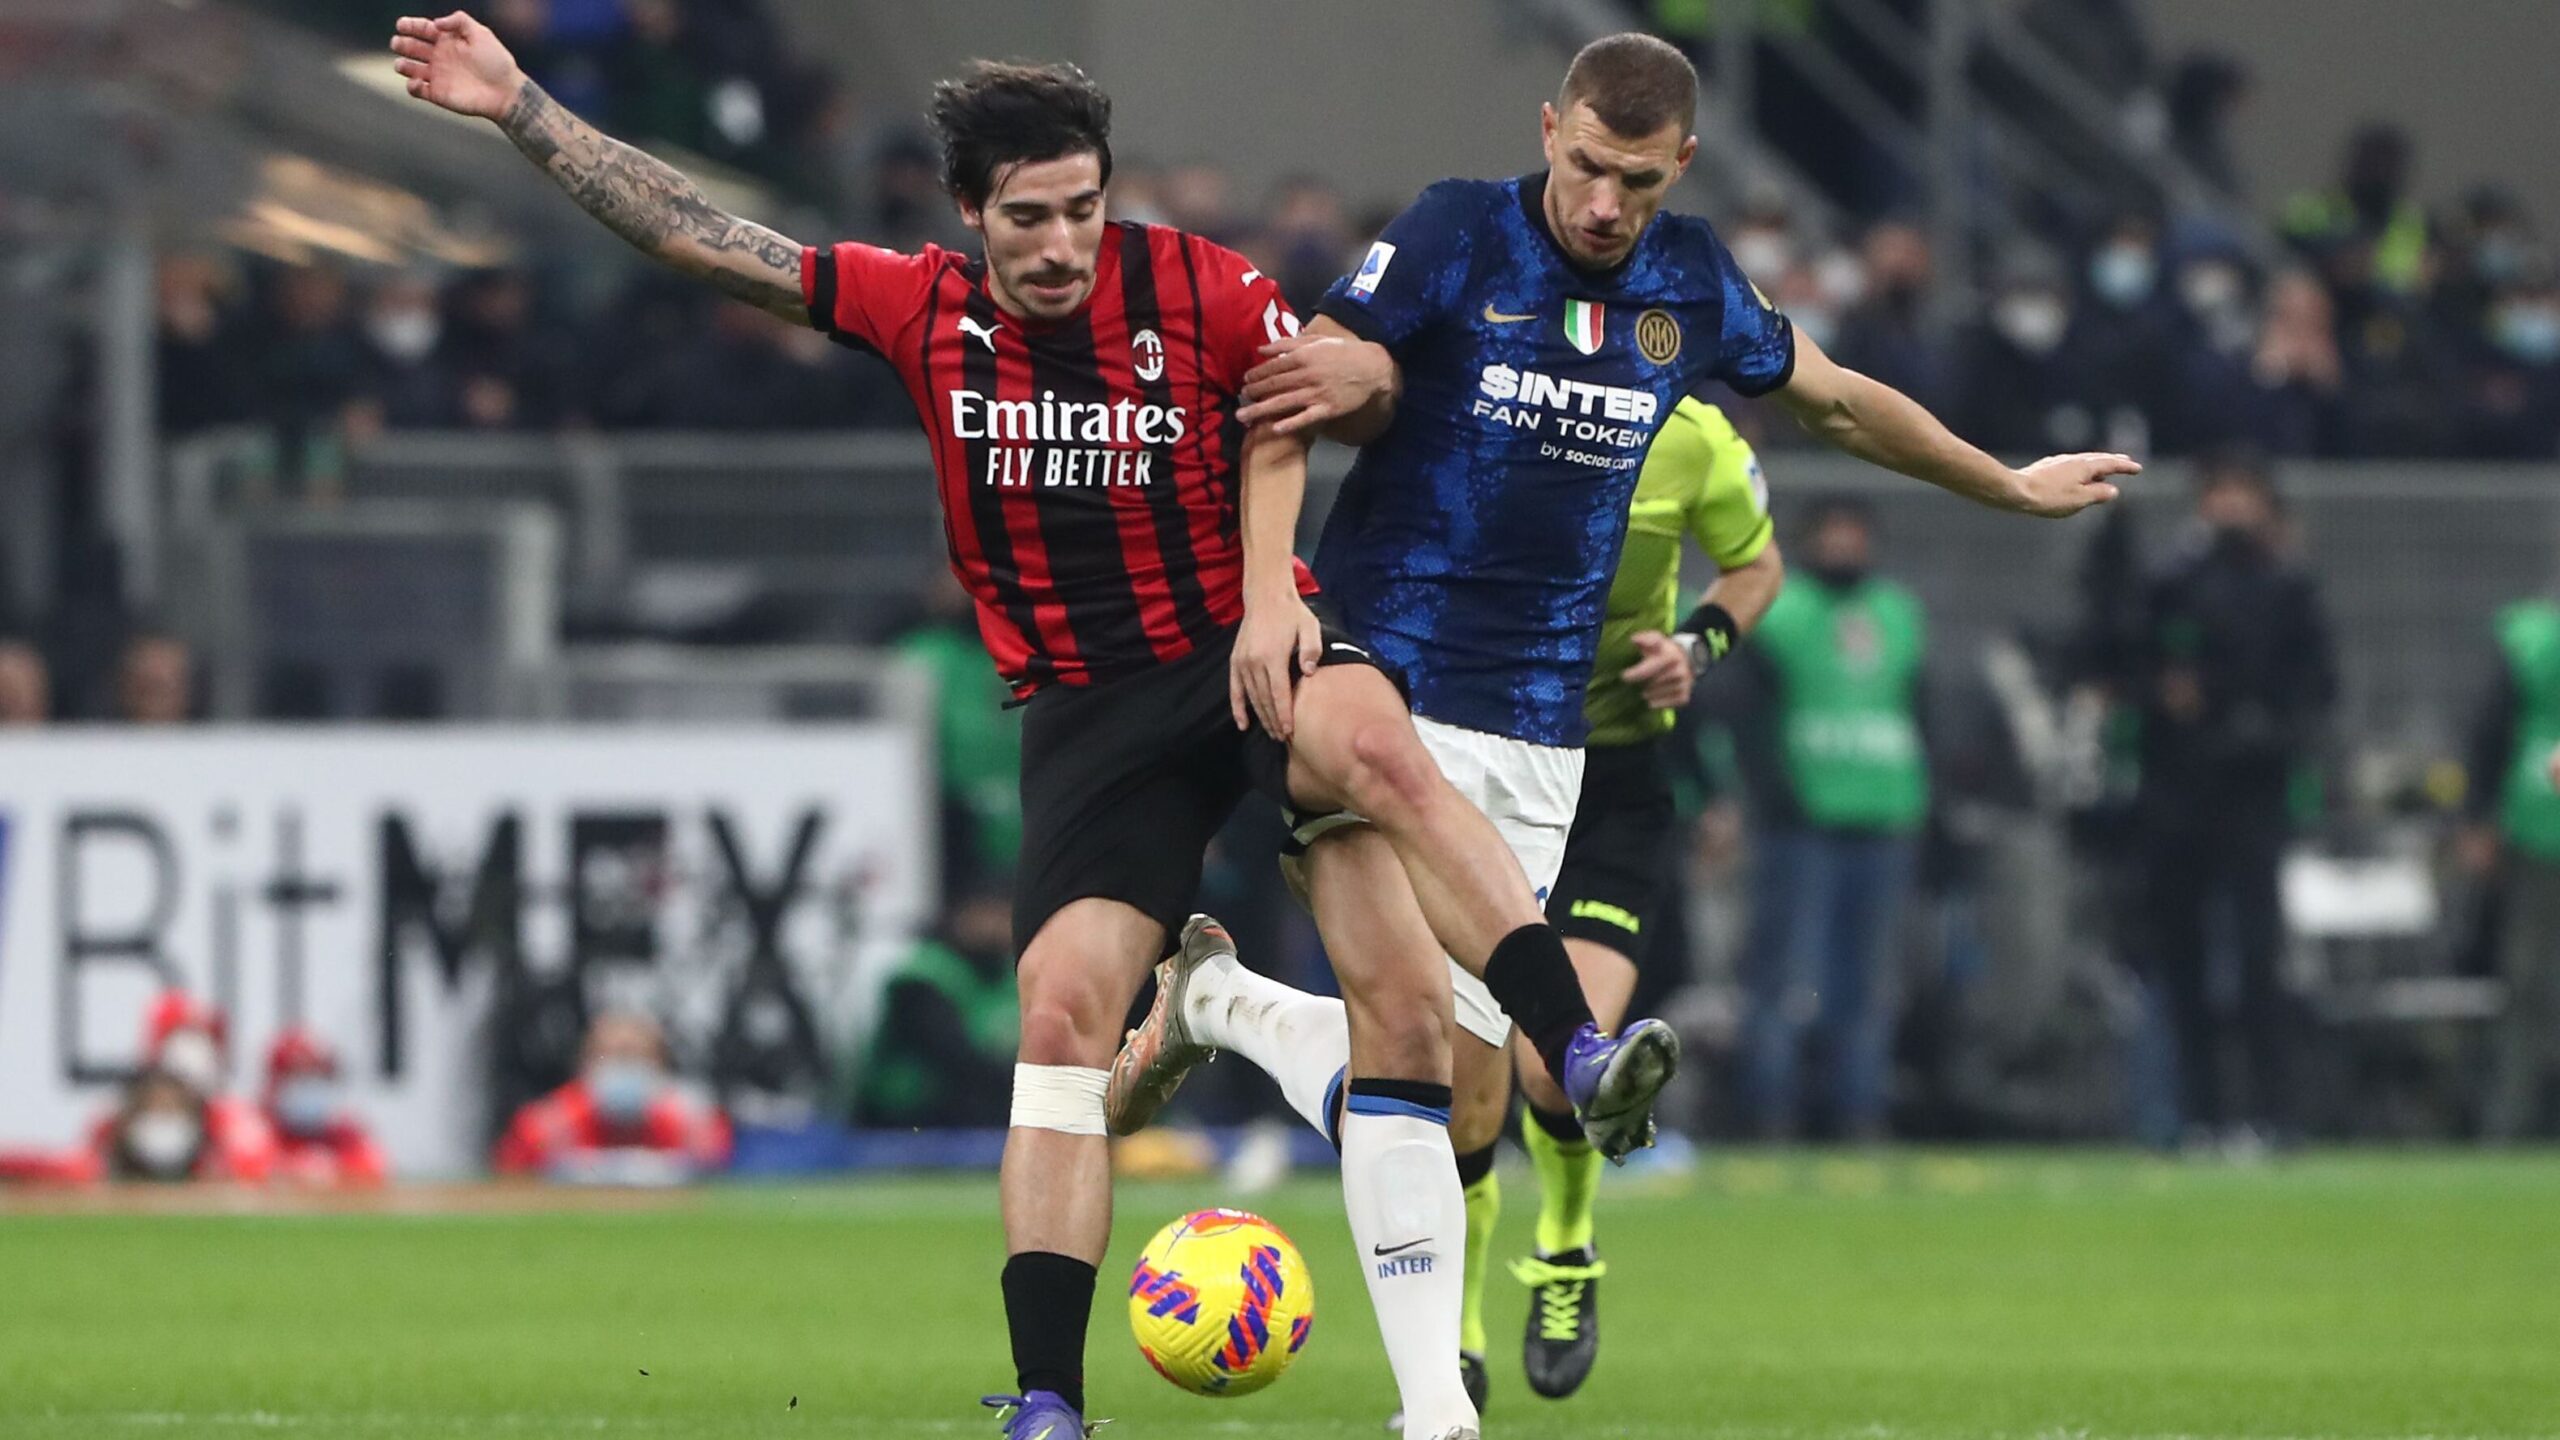 Inter - Milan in chiaro, Agcom ad Amazon Prime: "Deve vendere la sua esclusiva"